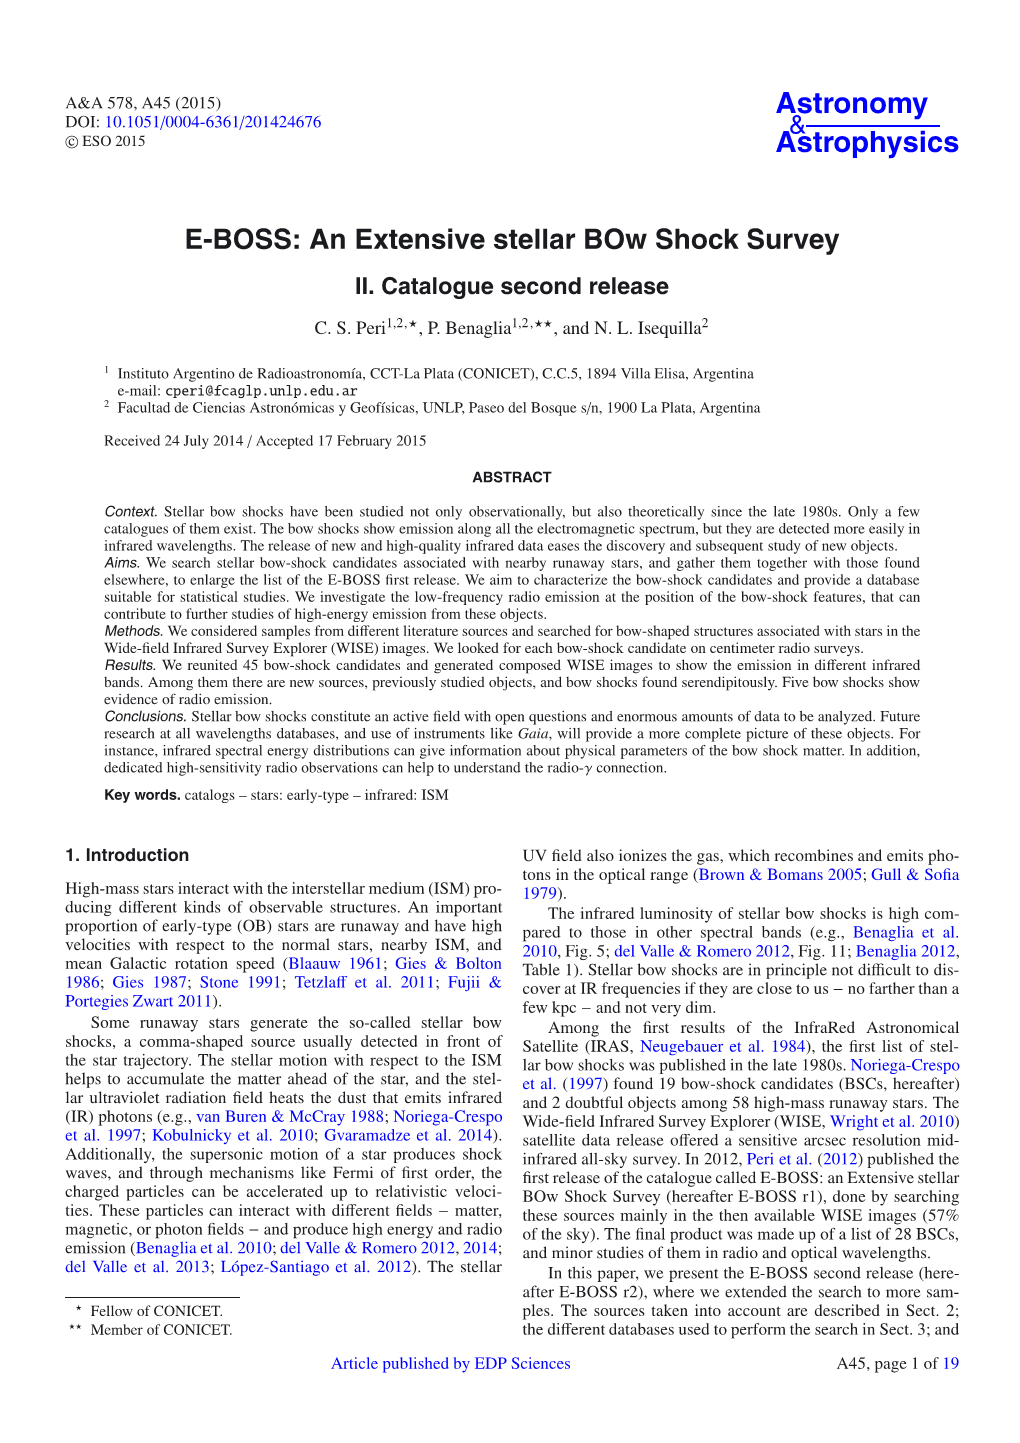 E-BOSS: an Extensive Stellar Bow Shock Survey II